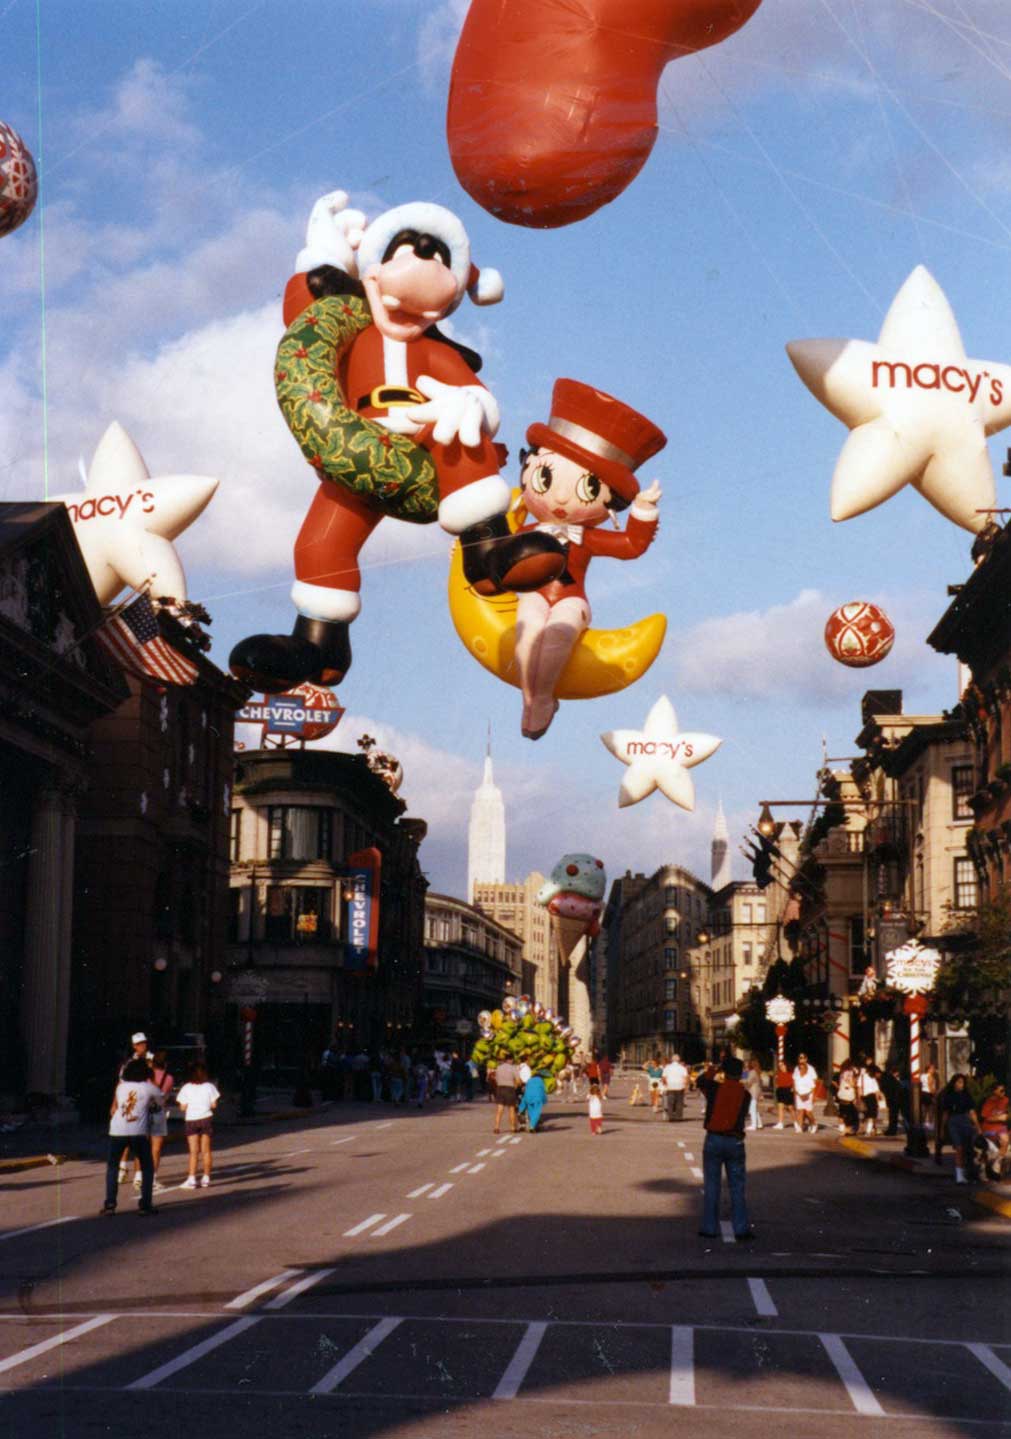 macysballons1992a.jpg